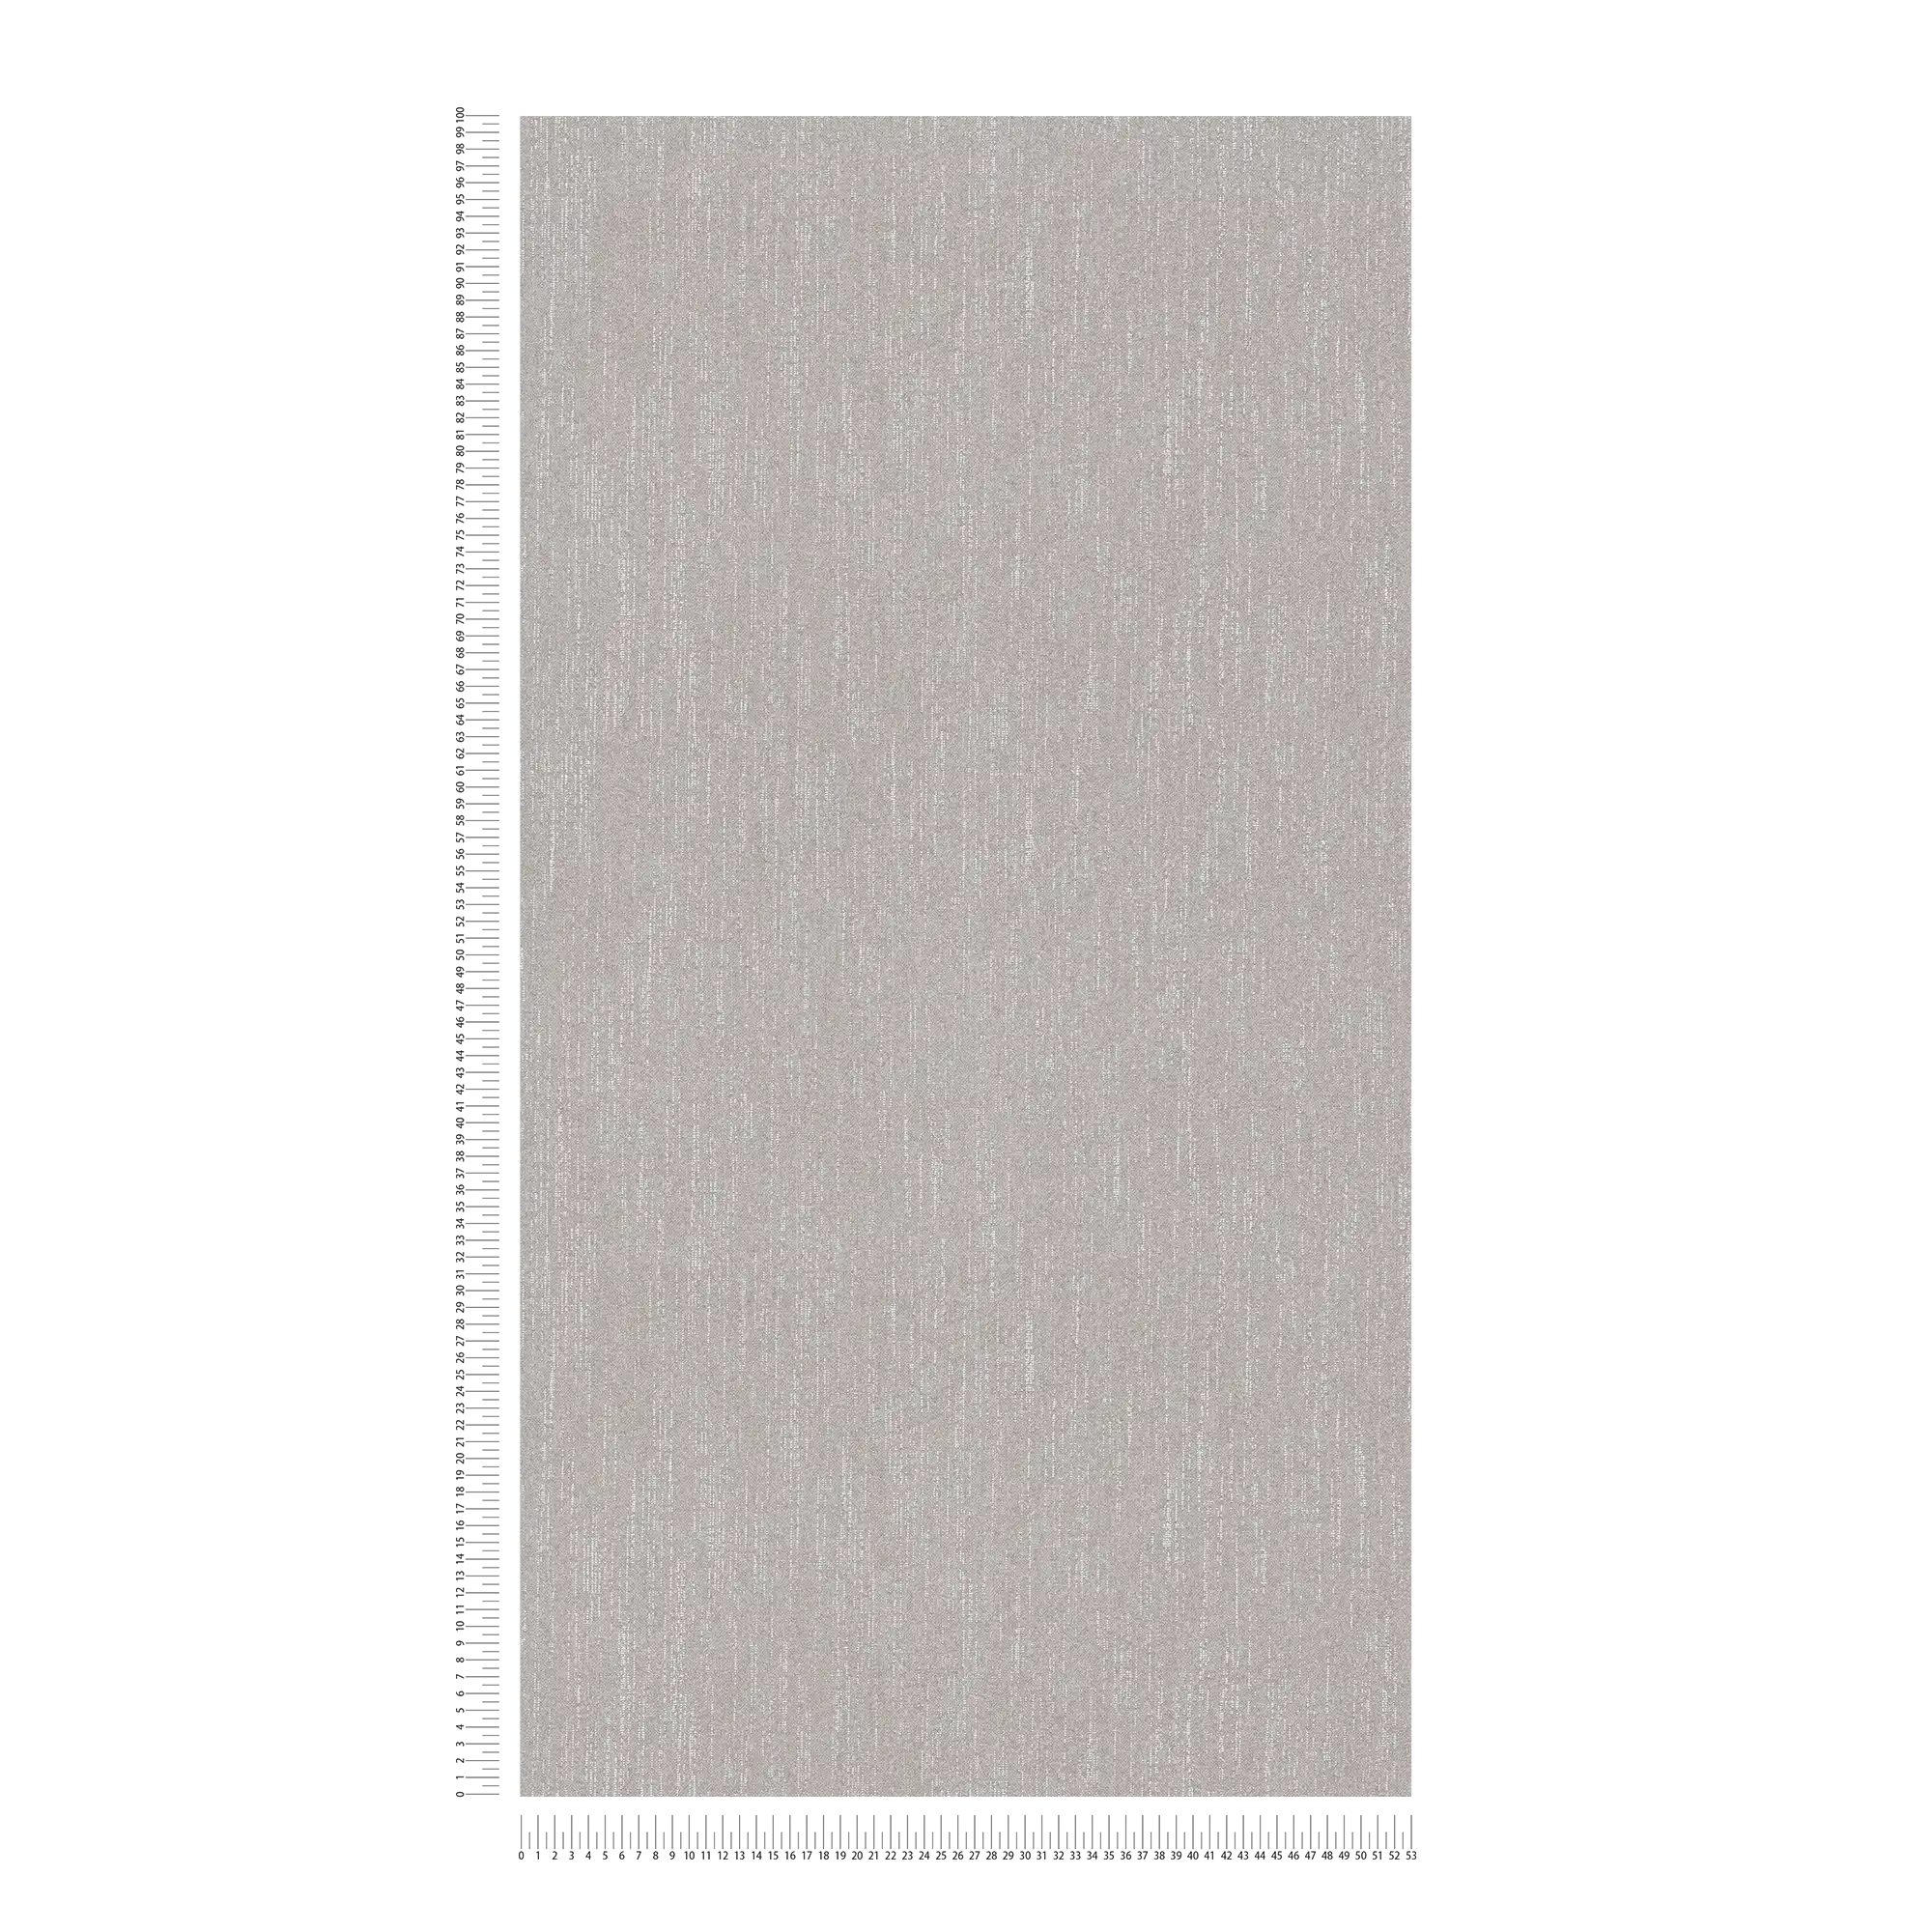             Papier peint uni gris argenté avec effet bouclé - gris
        